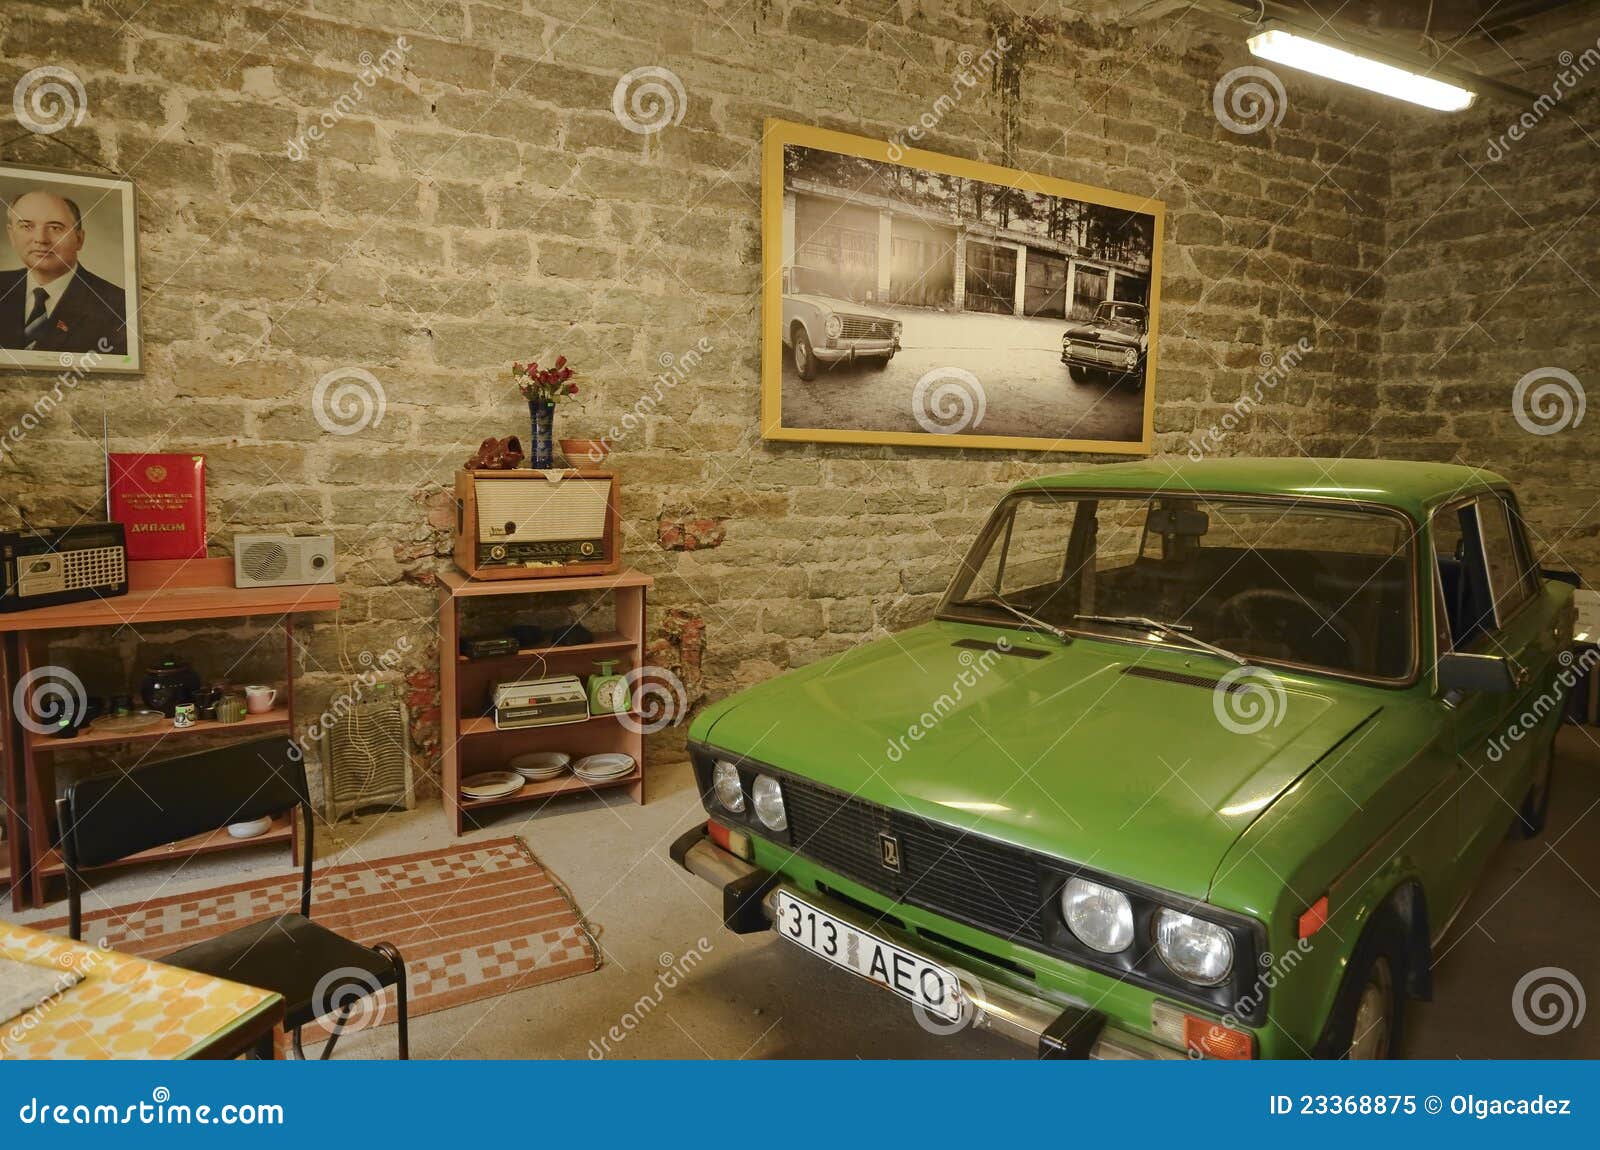 Aug 8th, 2011. Old Lada car showcased in Soviet Life Exhibit in Tallinn, Estonia